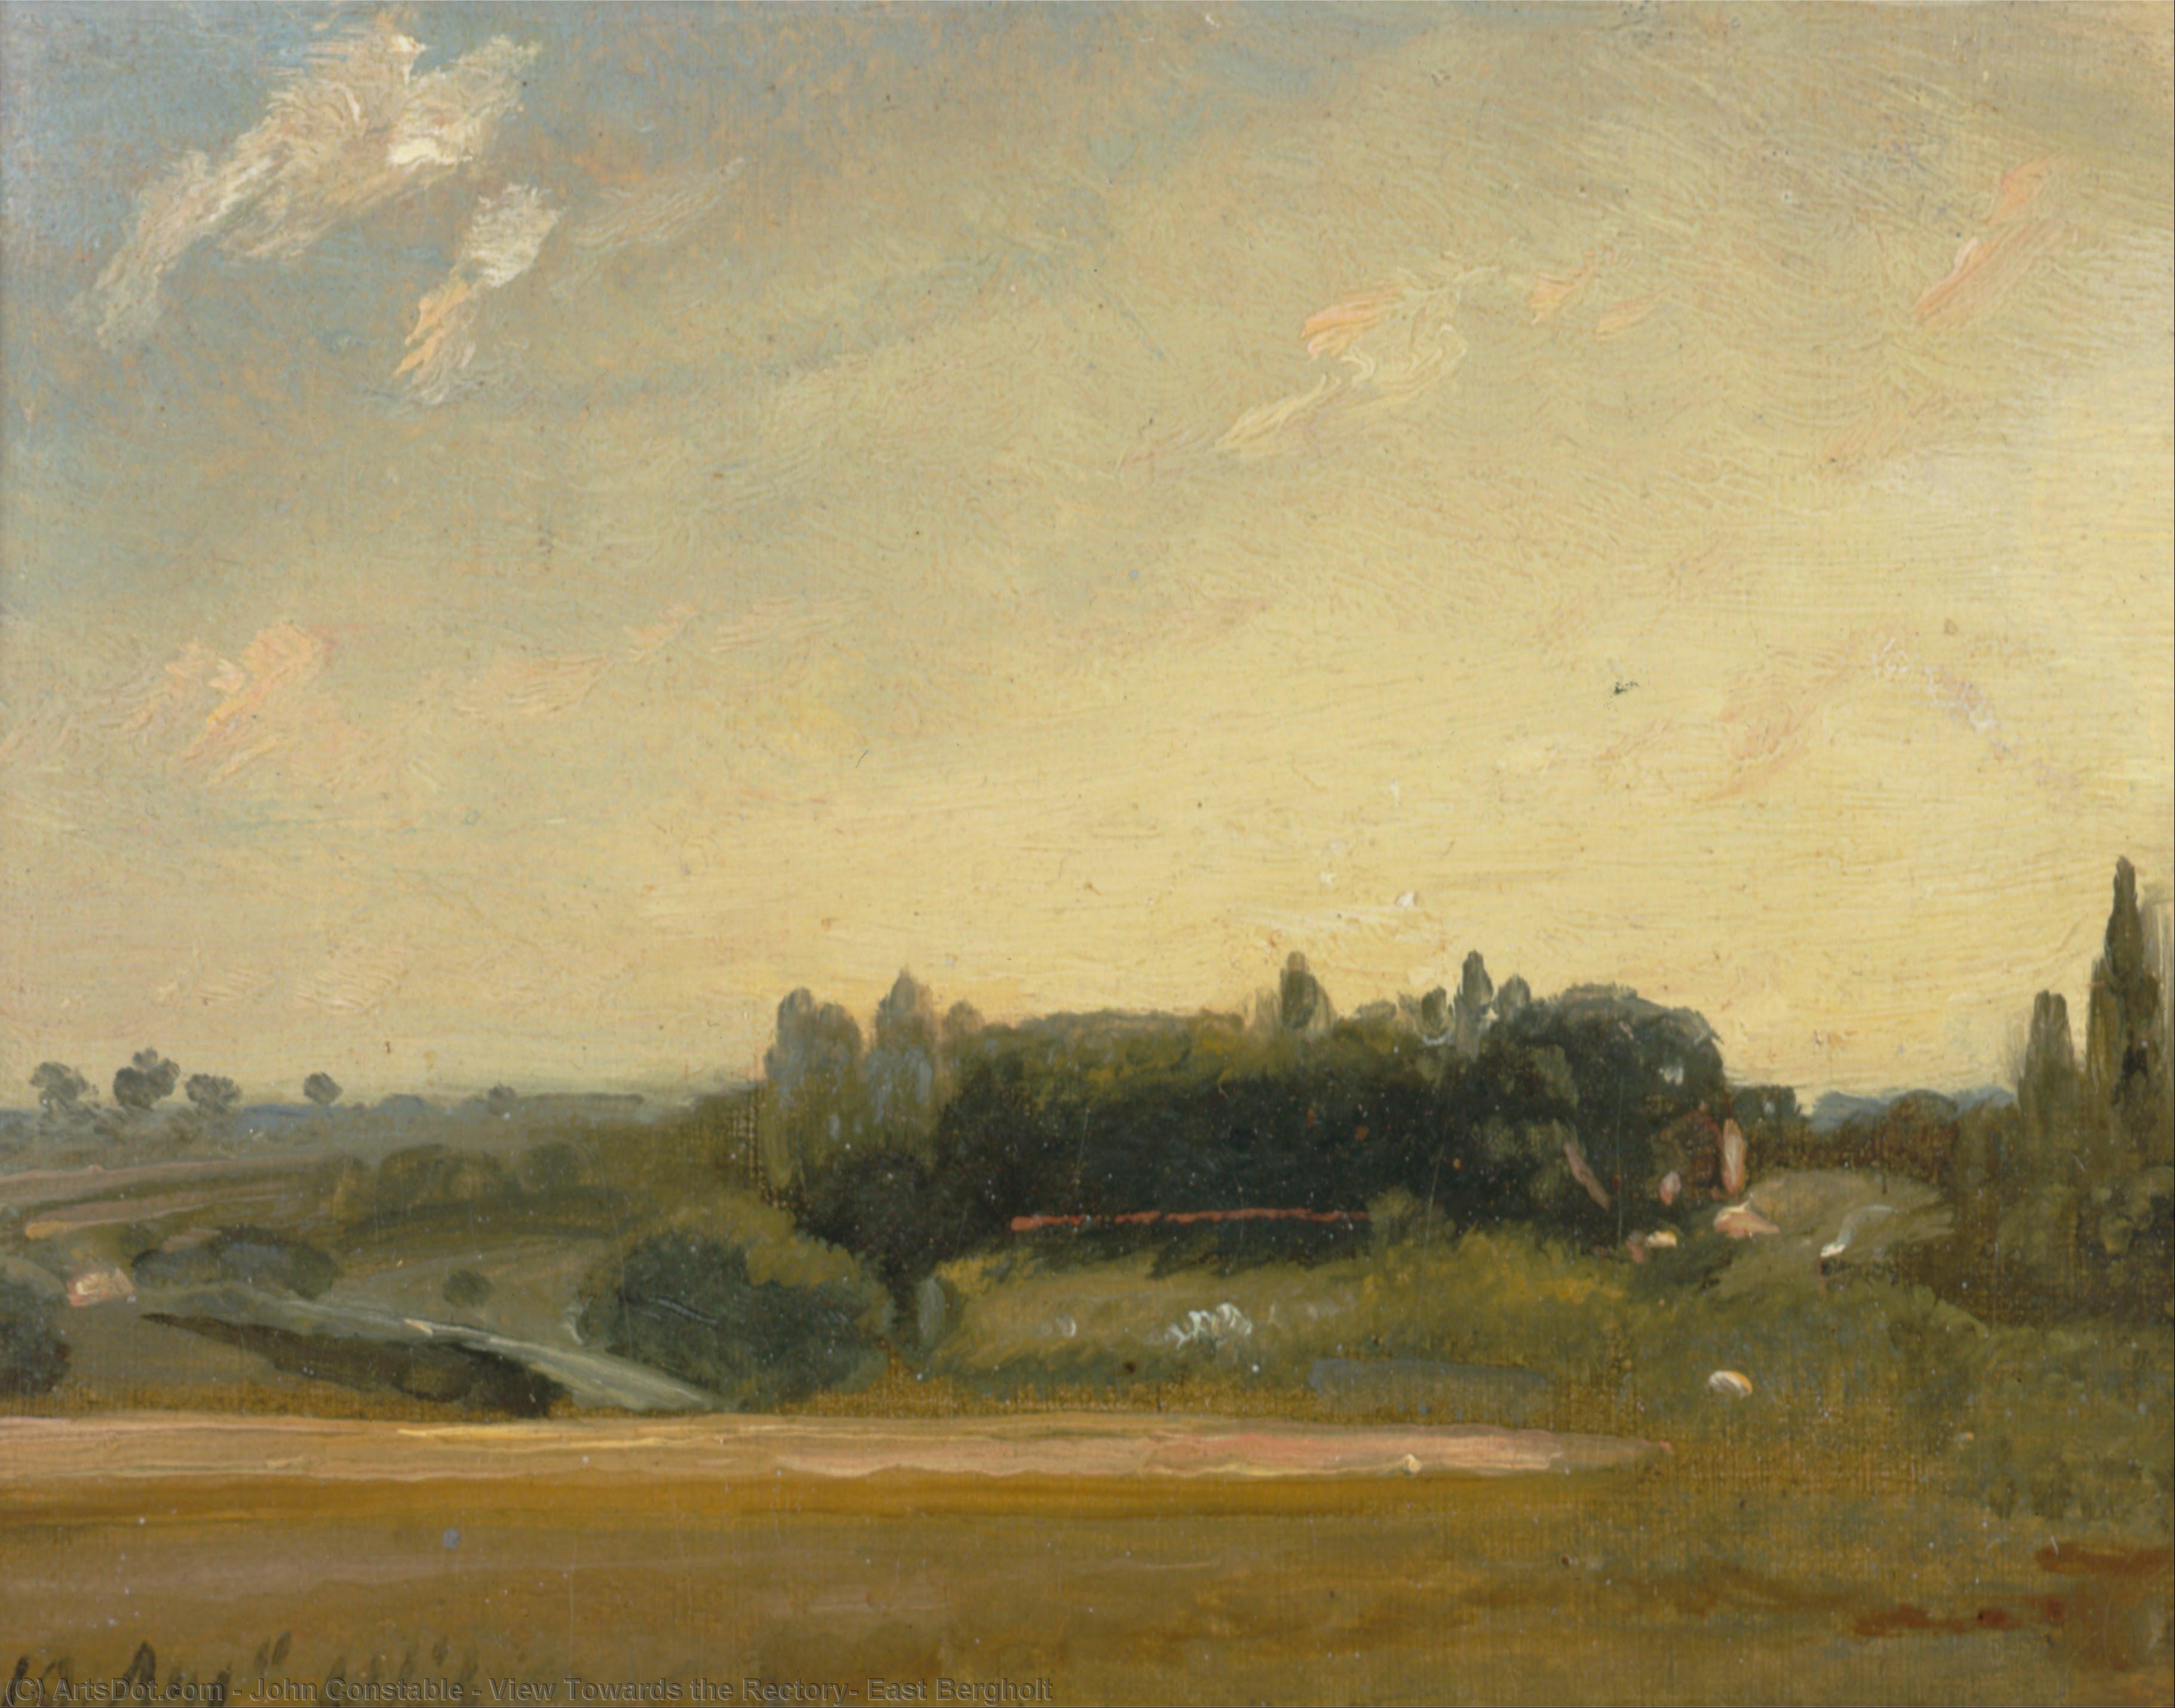 WikiOO.org - אנציקלופדיה לאמנויות יפות - ציור, יצירות אמנות John Constable - View Towards the Rectory, East Bergholt